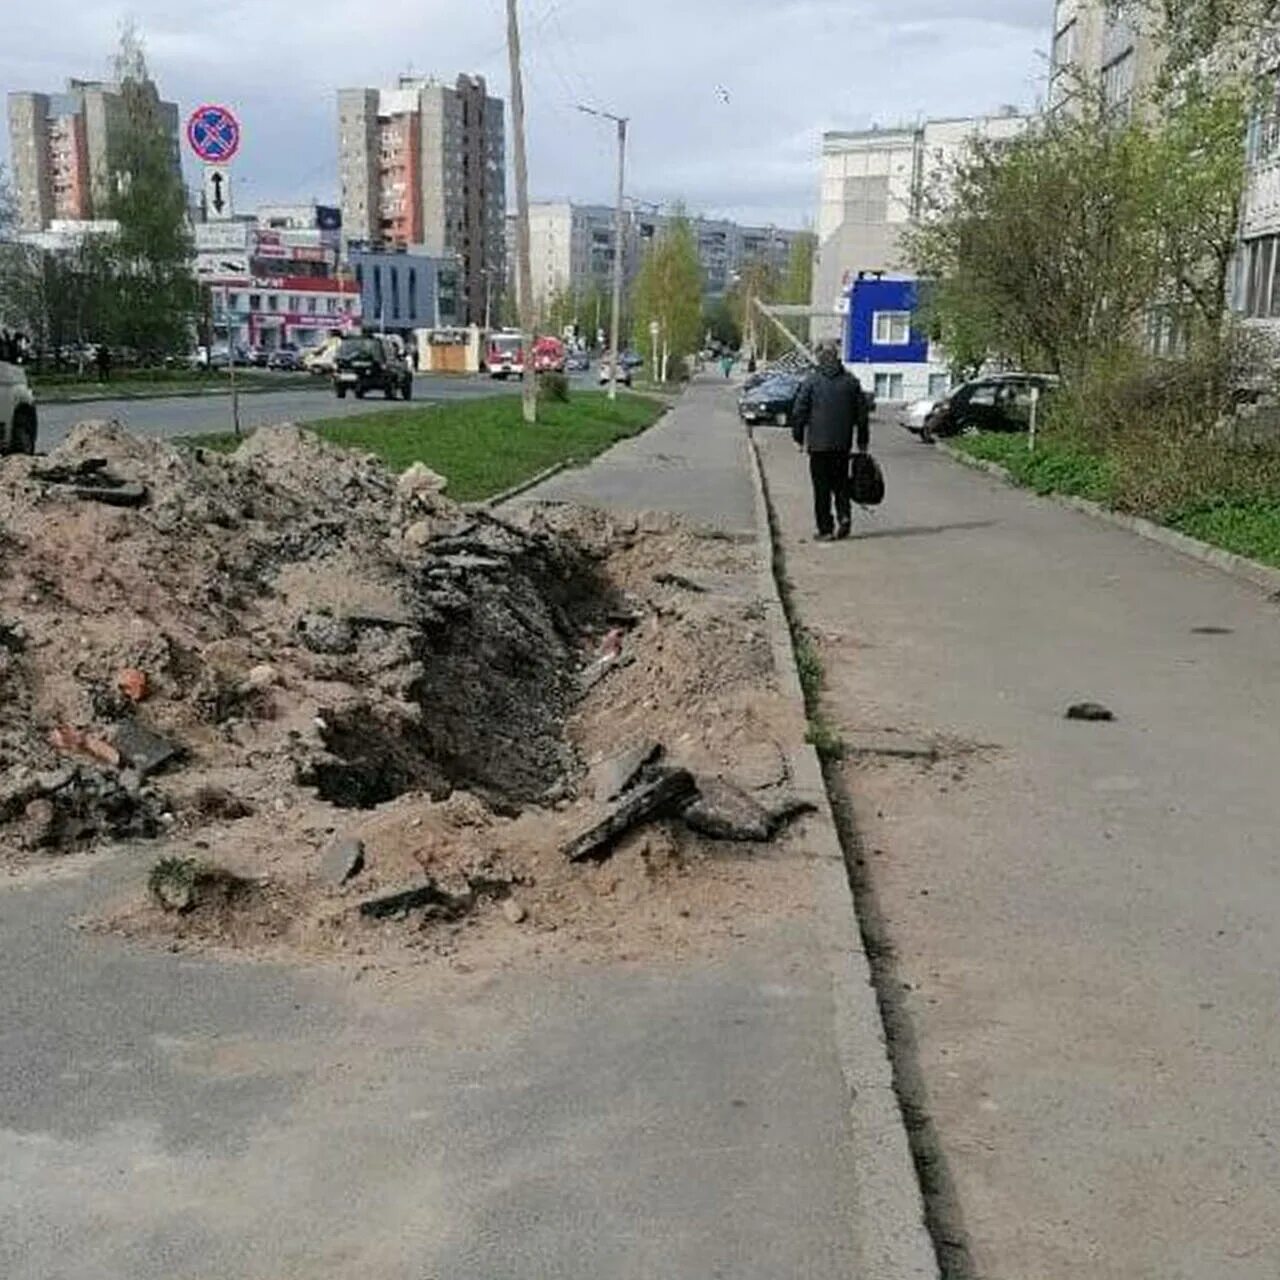 Жители города жалуются. Фото тротуара в городе. Яма фото. Раскопанные города. Роет яму.